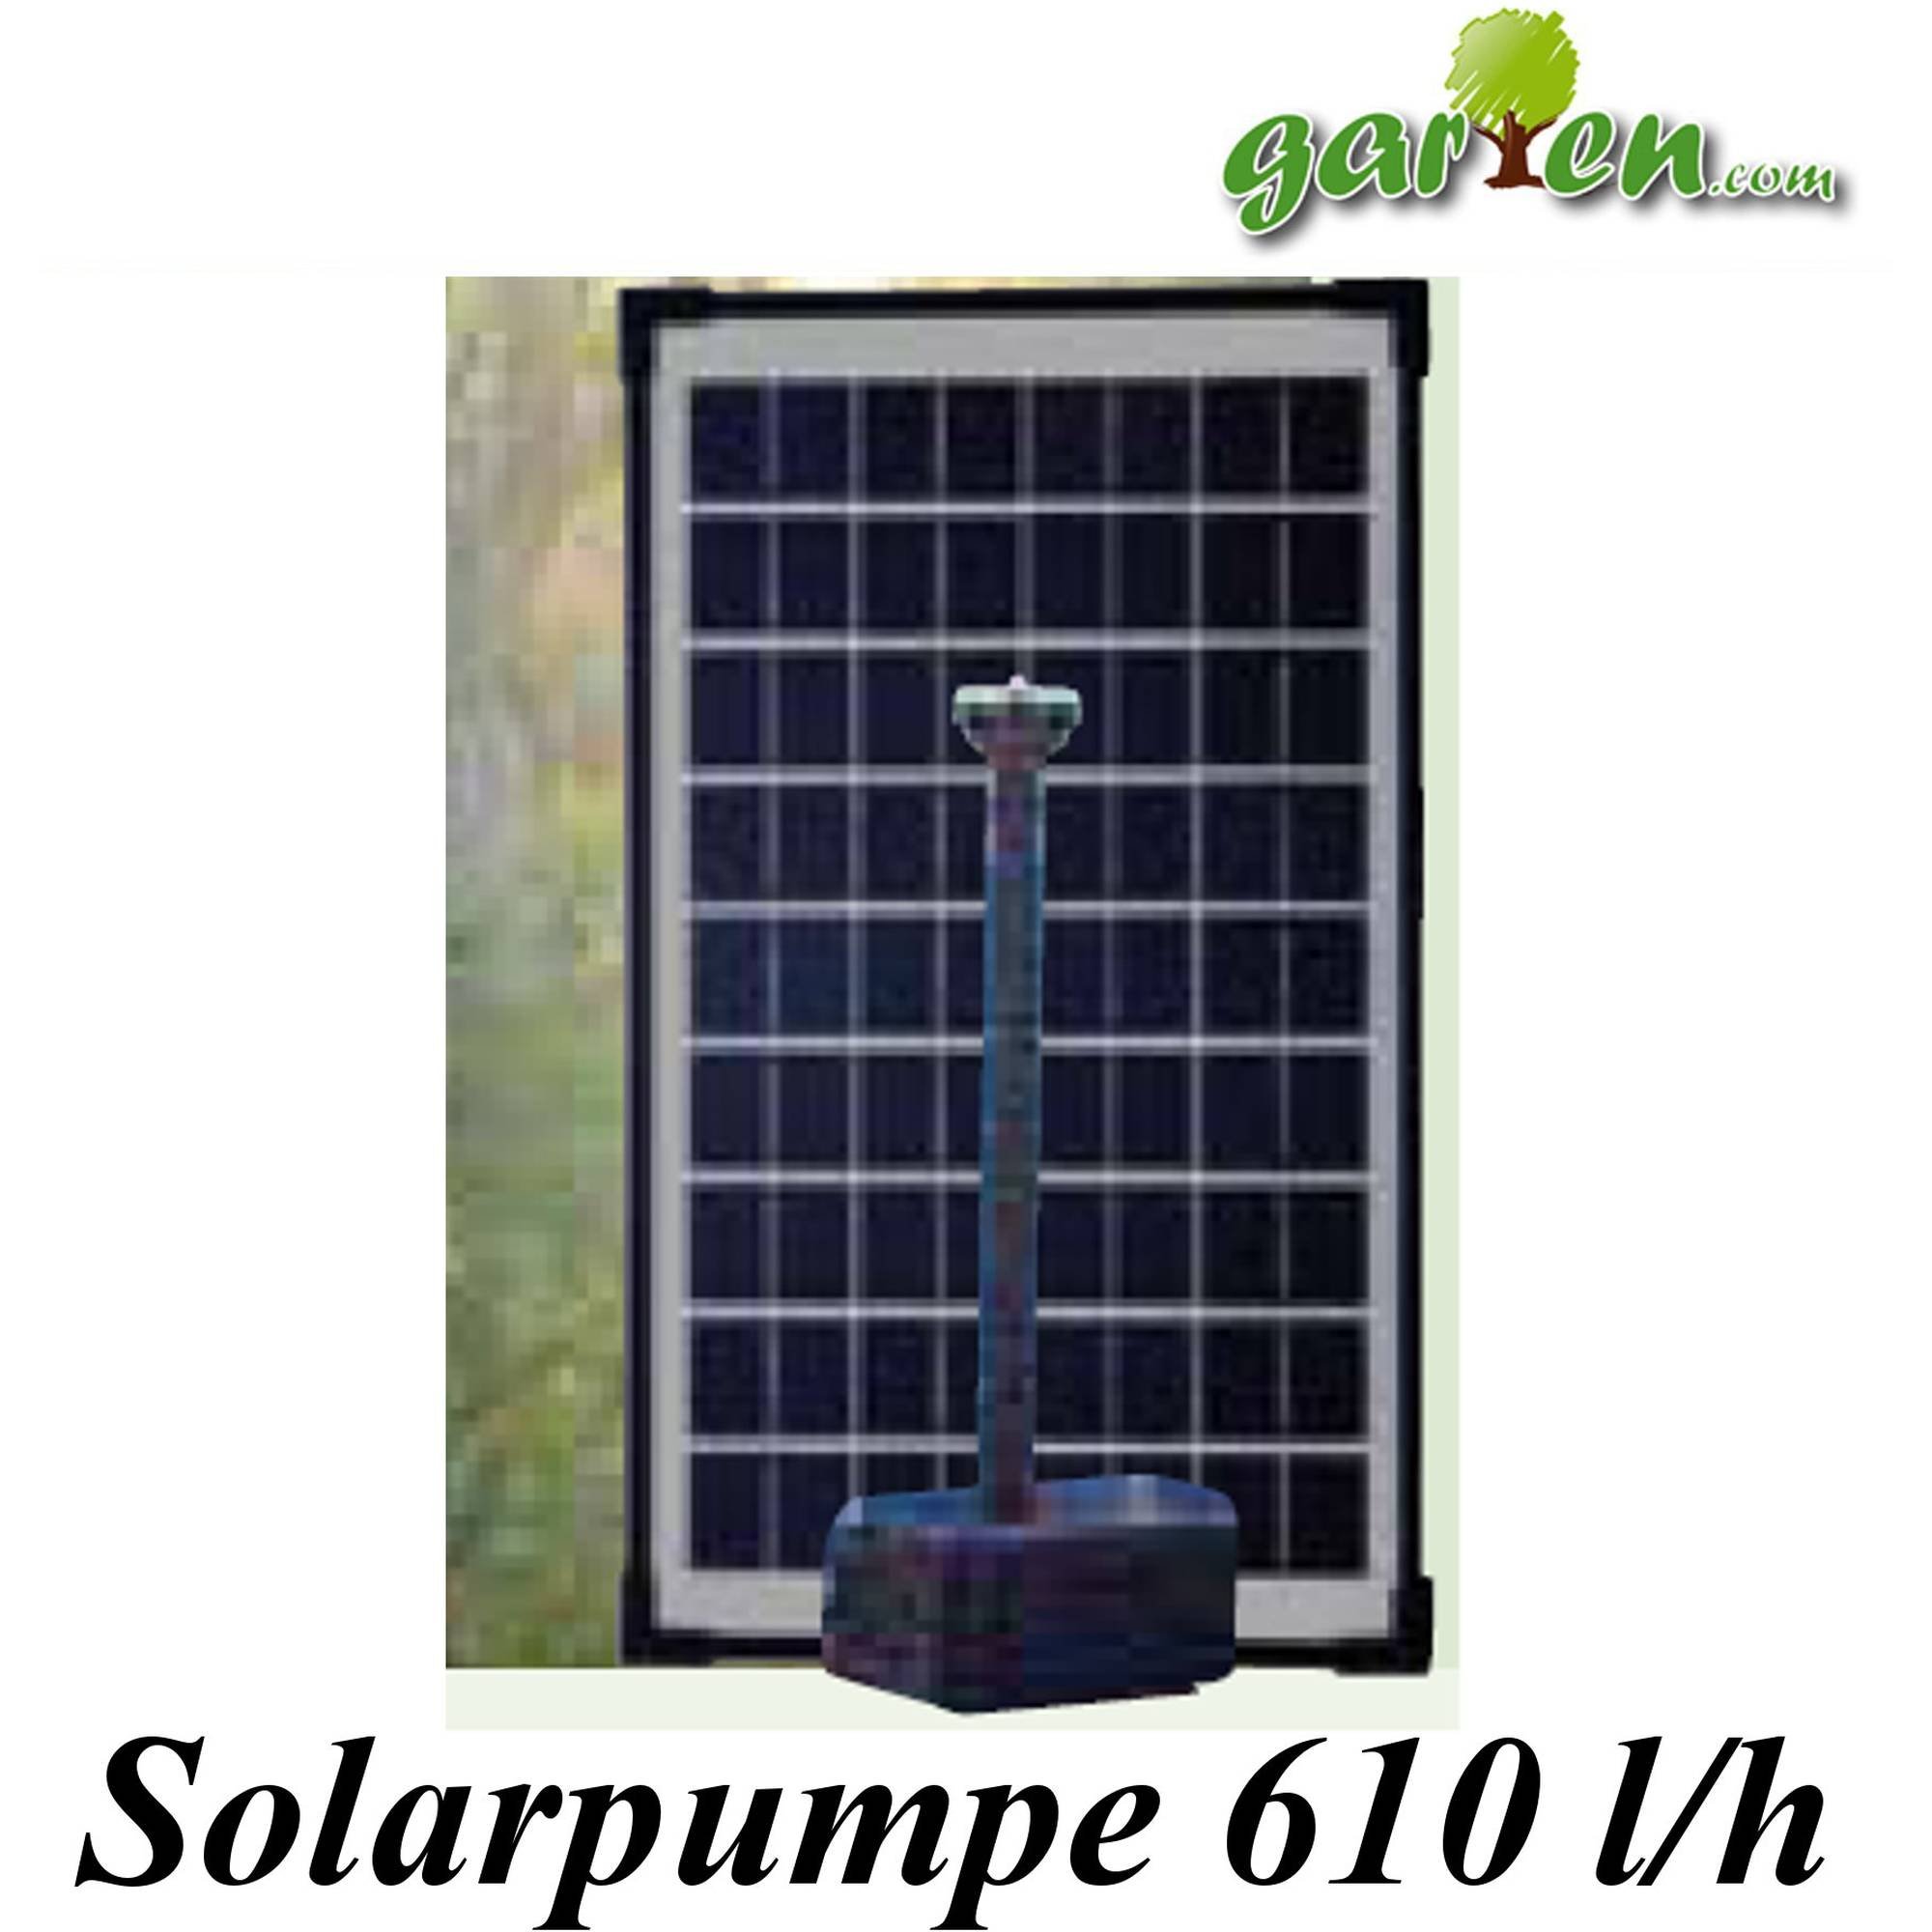 Pumpen Set Solar 610l/h von Heissner